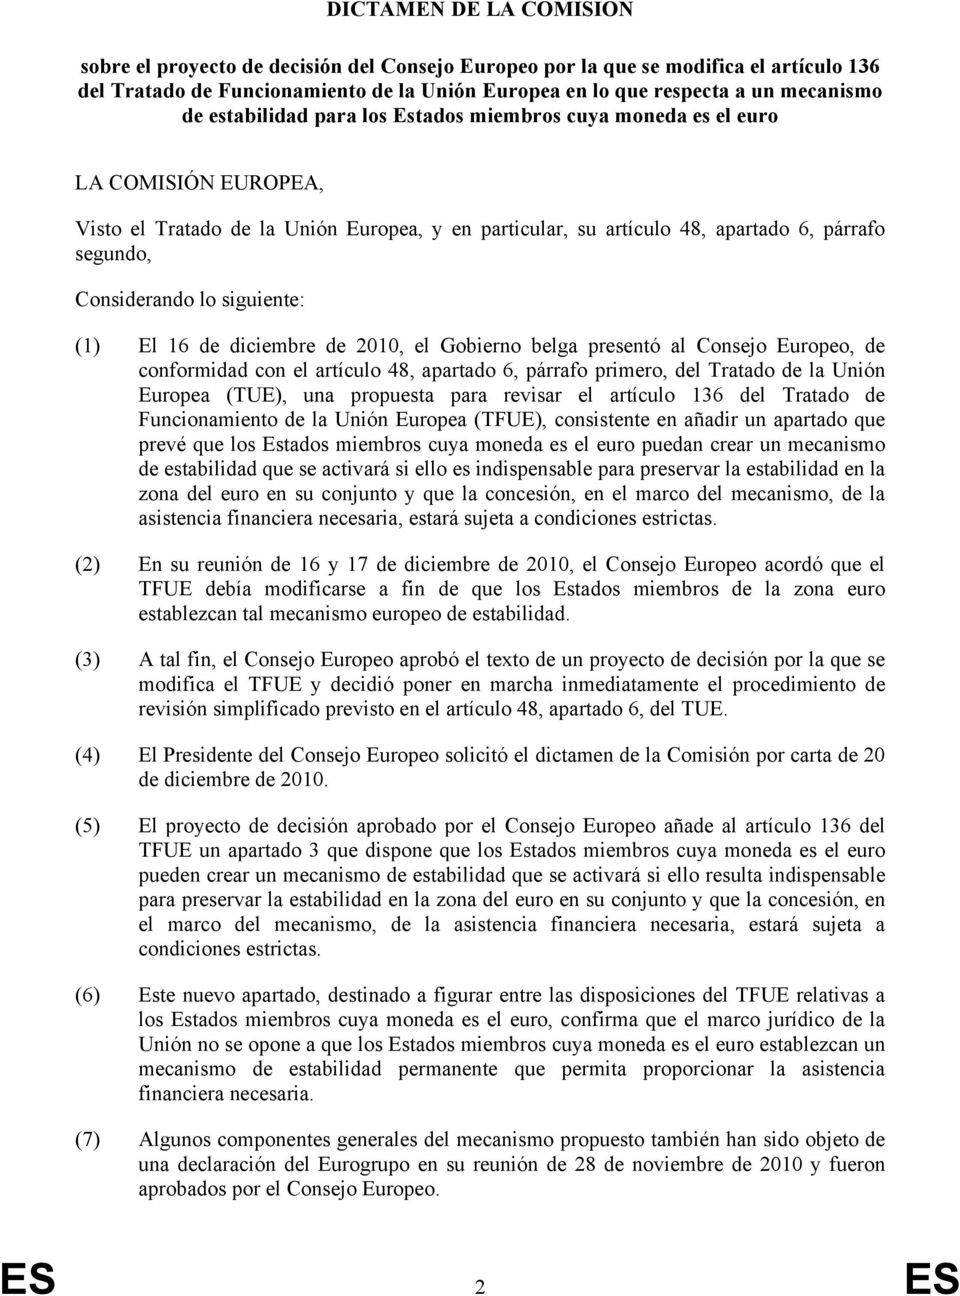 siguiente: (1) El 16 de diciembre de 2010, el Gobierno belga presentó al Consejo Europeo, de conformidad con el artículo 48, apartado 6, párrafo primero, del Tratado de la Unión Europea (TUE), una